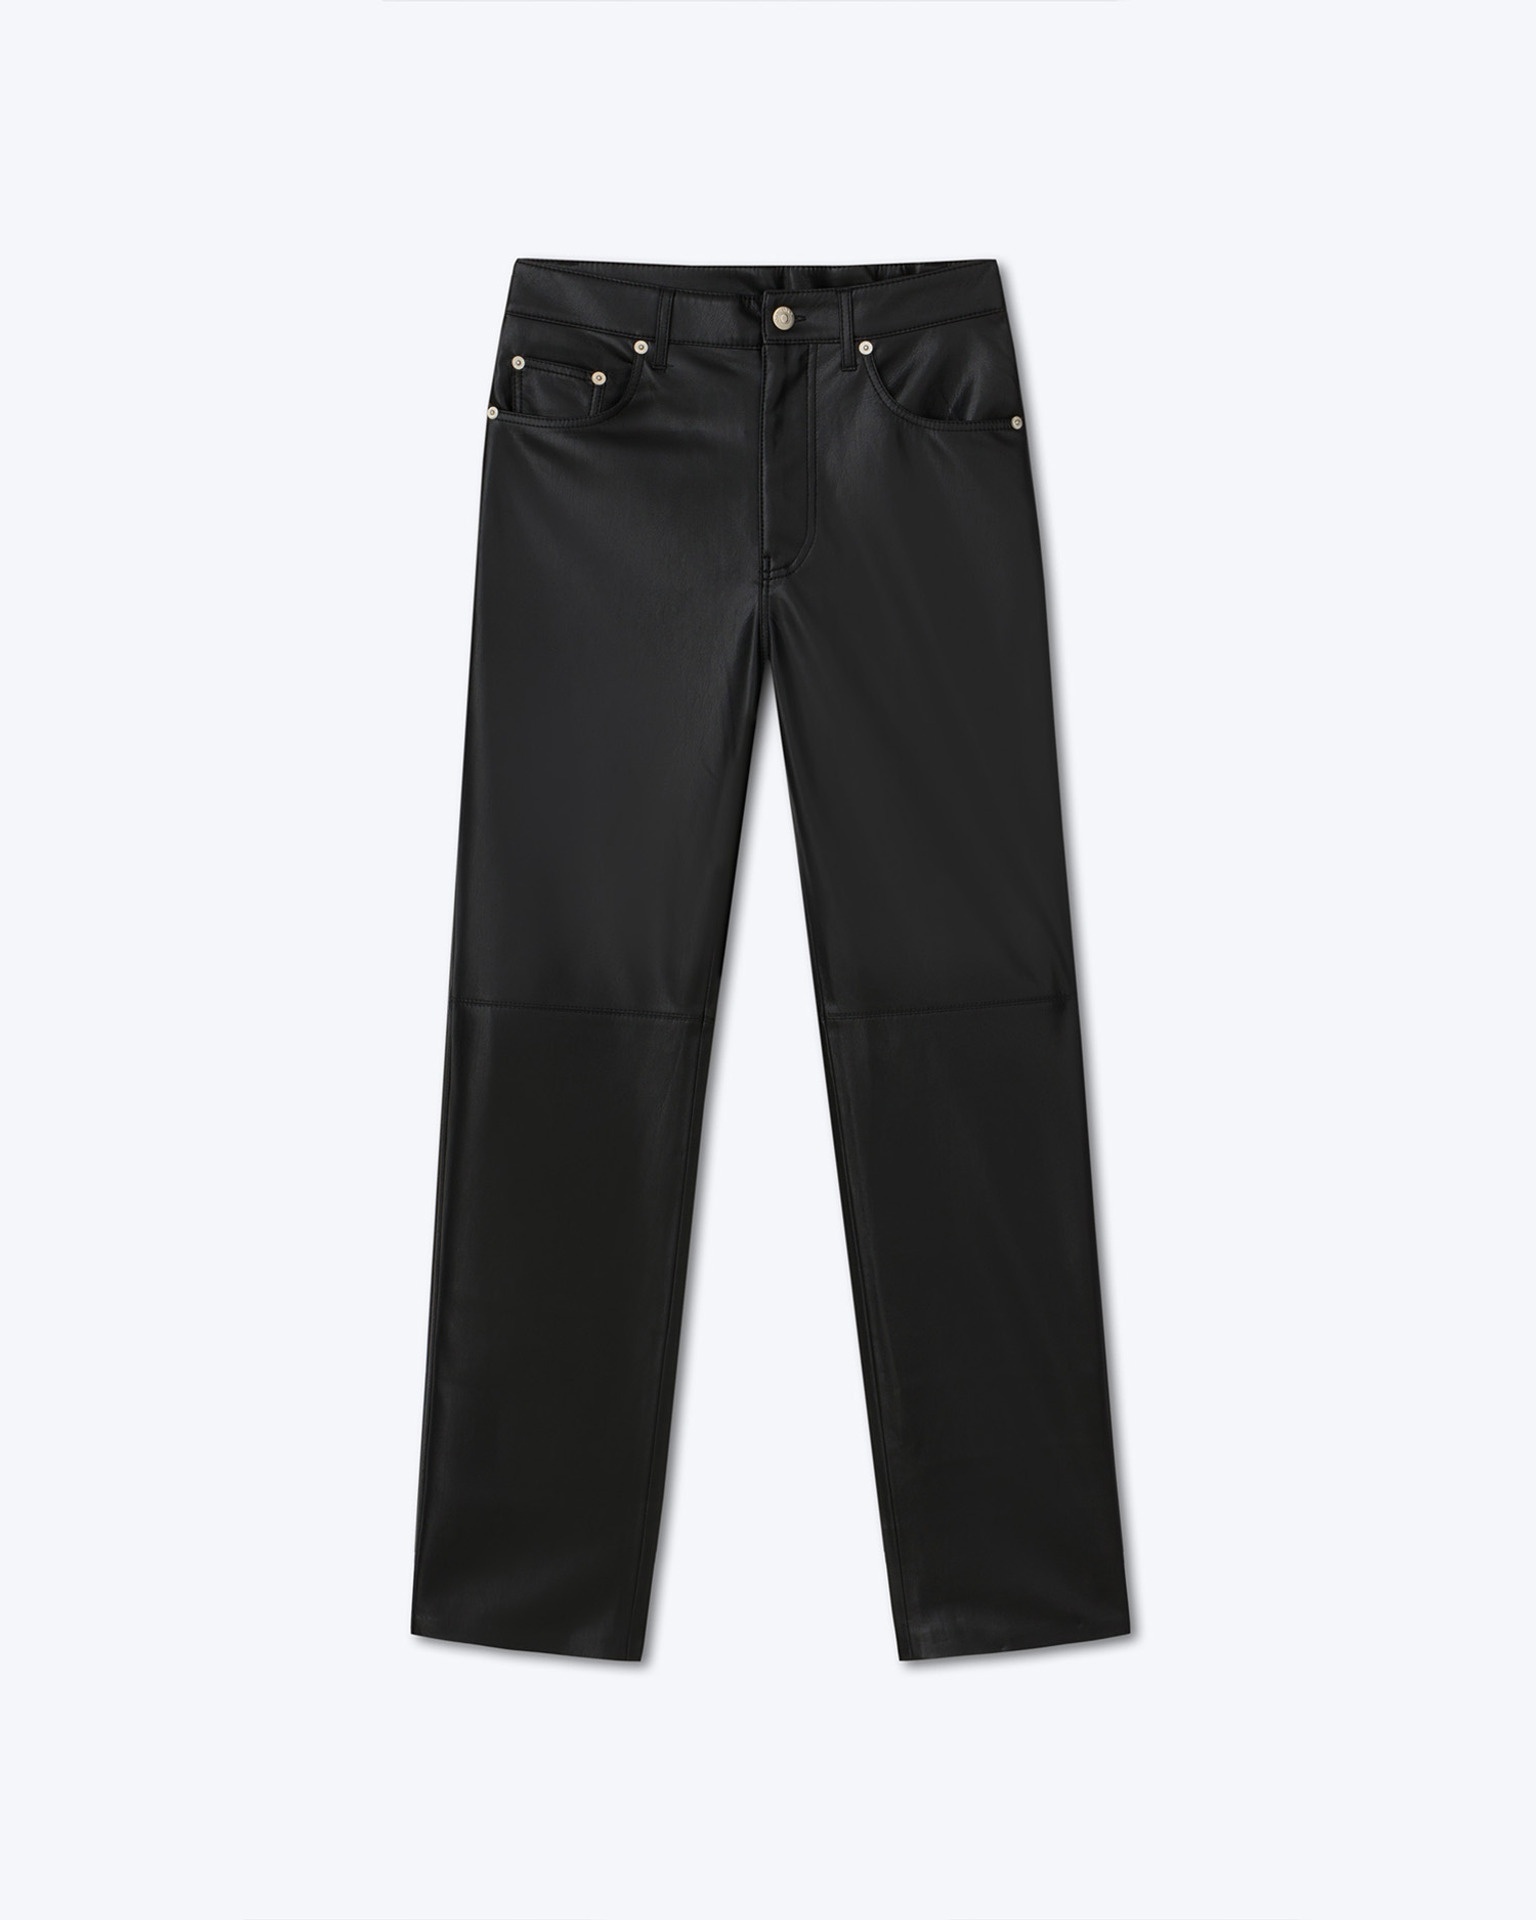 Okobor™ Alt-Leather Pants - 1